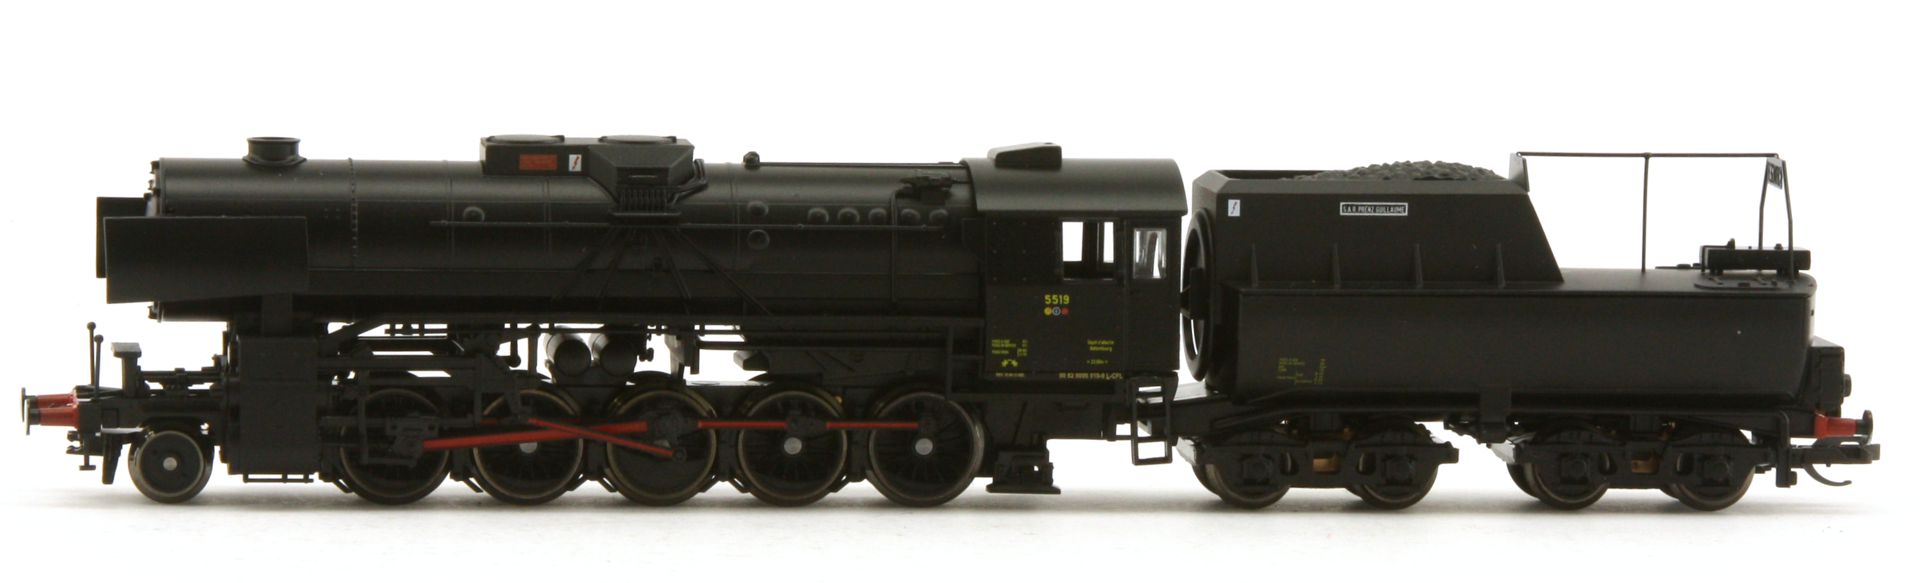 Tillig 02065 - Dampflokomotive Rh 55 Museumslok, CFL, Ep.VI